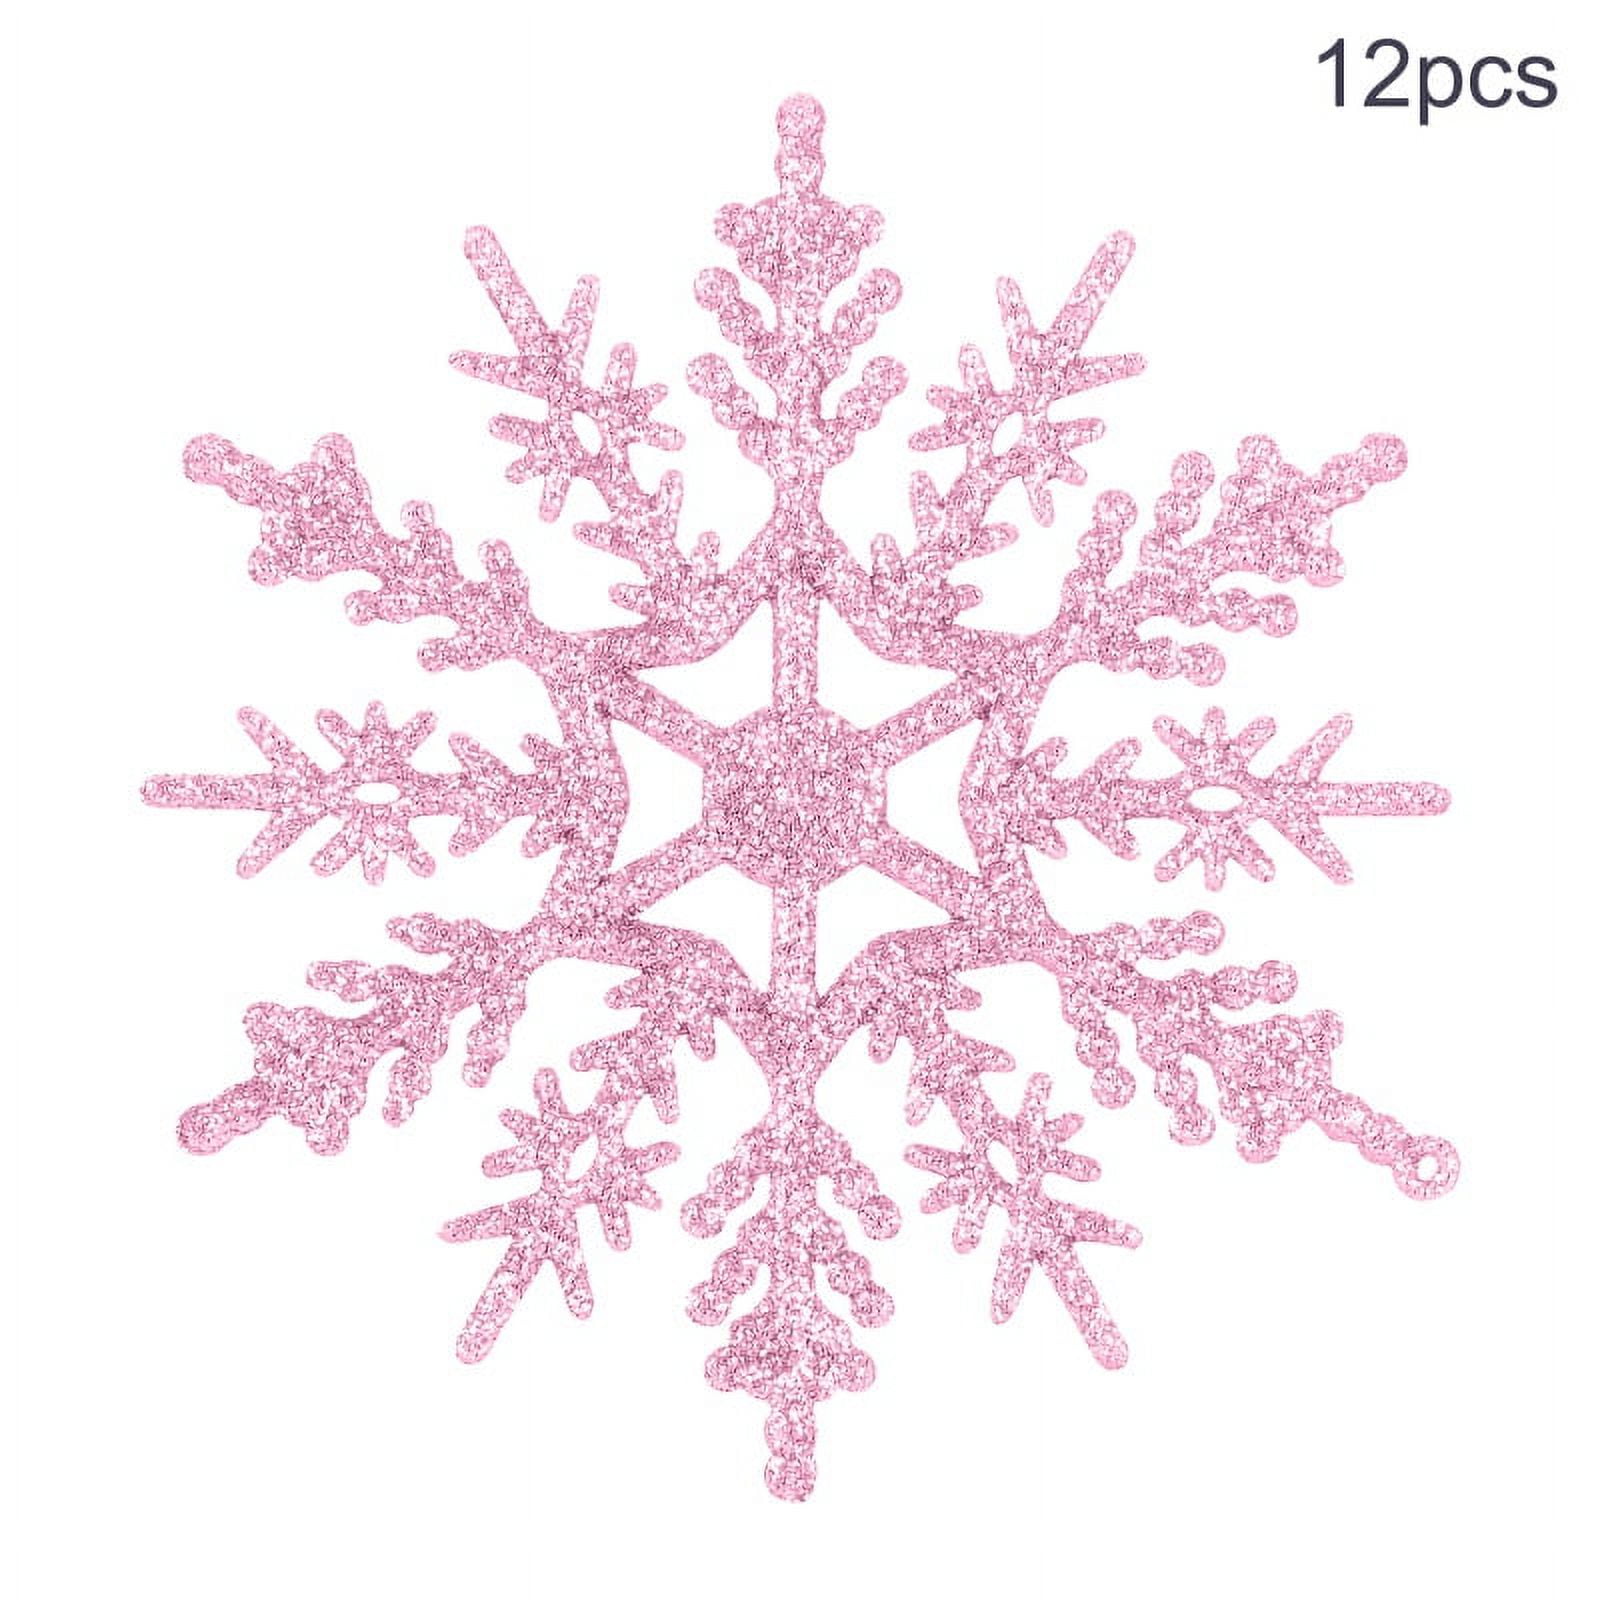 36pcs White Snowflake Ornaments Plastic Glitter Snow Flakes